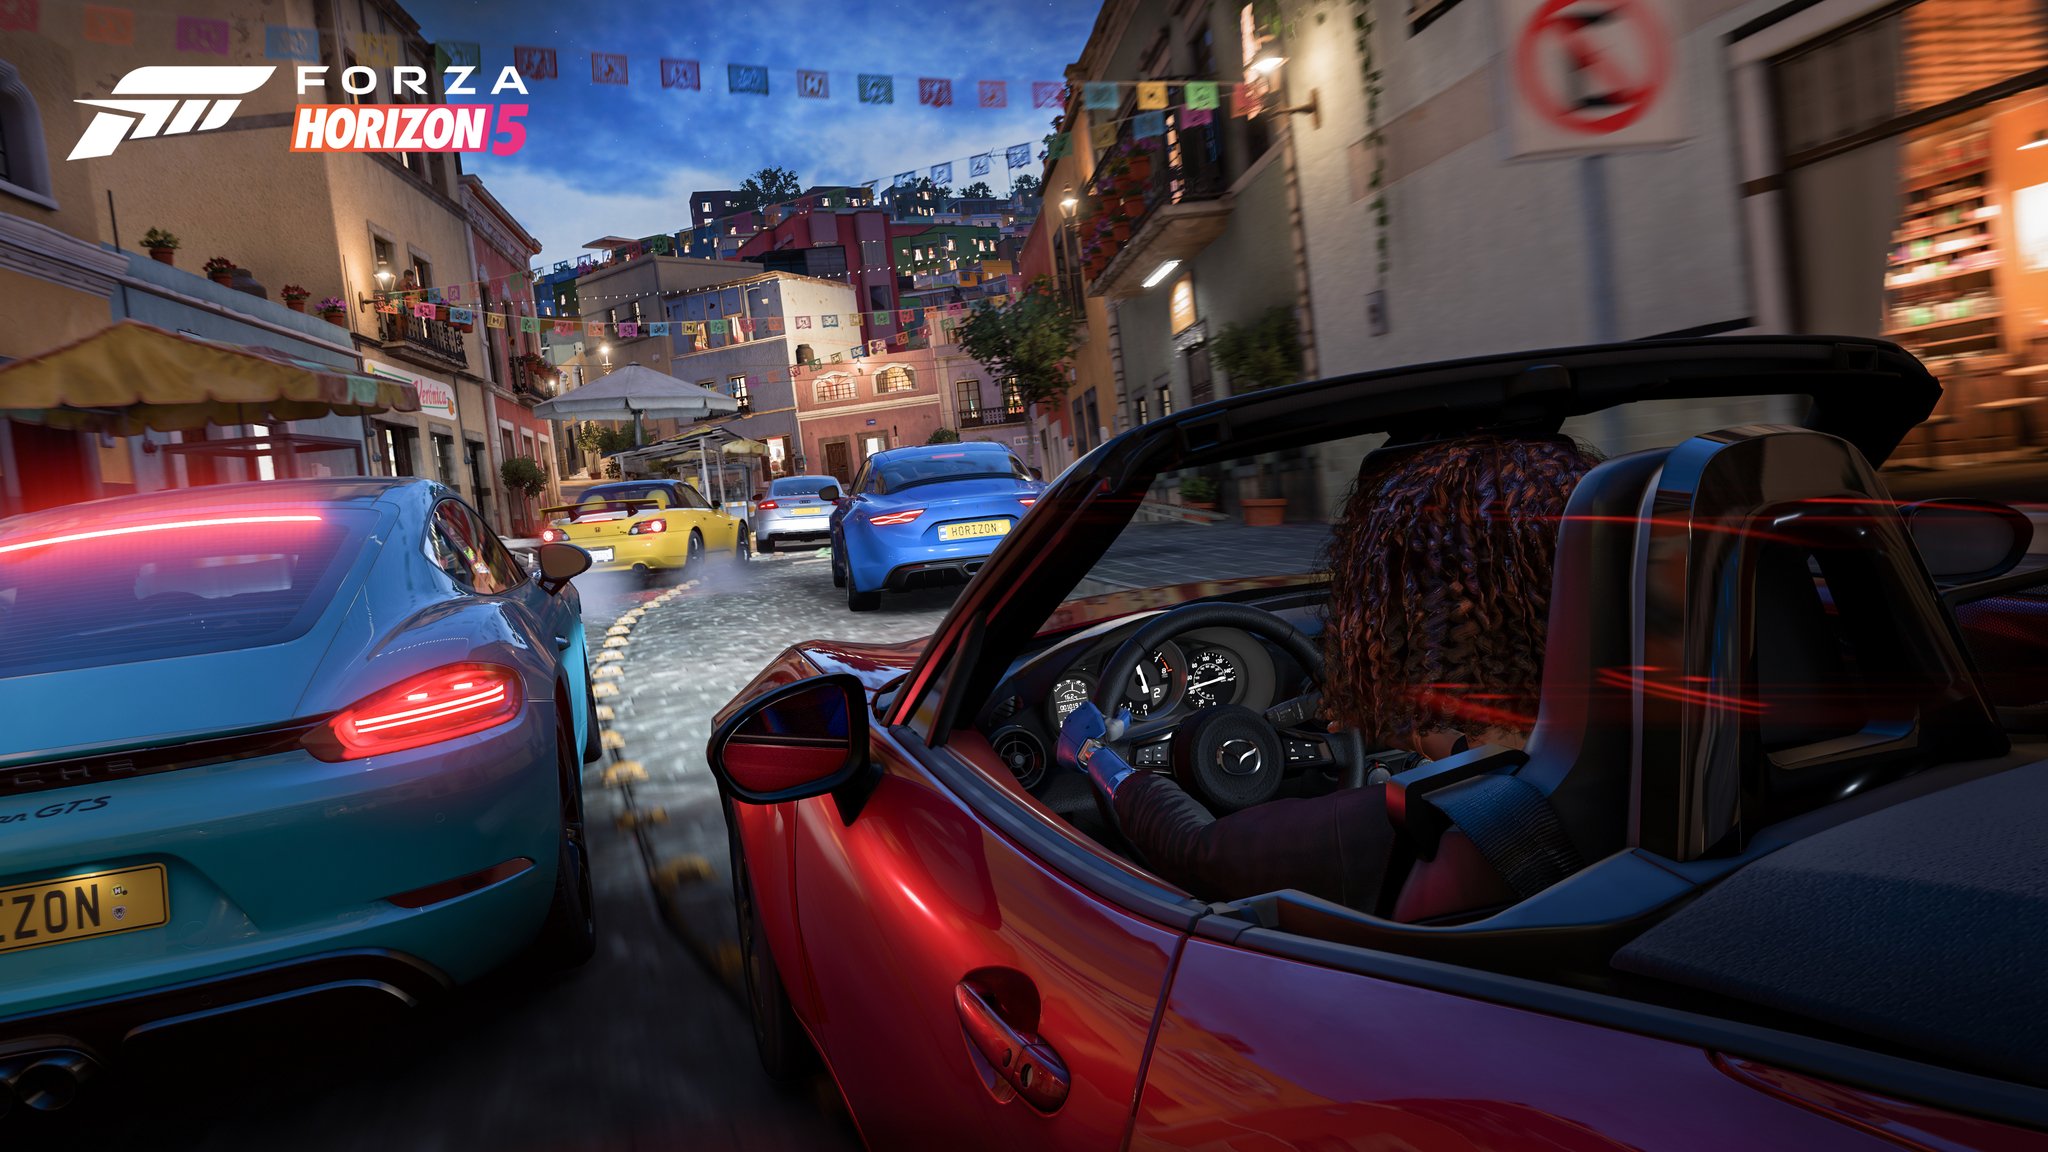 Скриншот Forza Horizon 5 с изображением различных гонок на автомобилях.